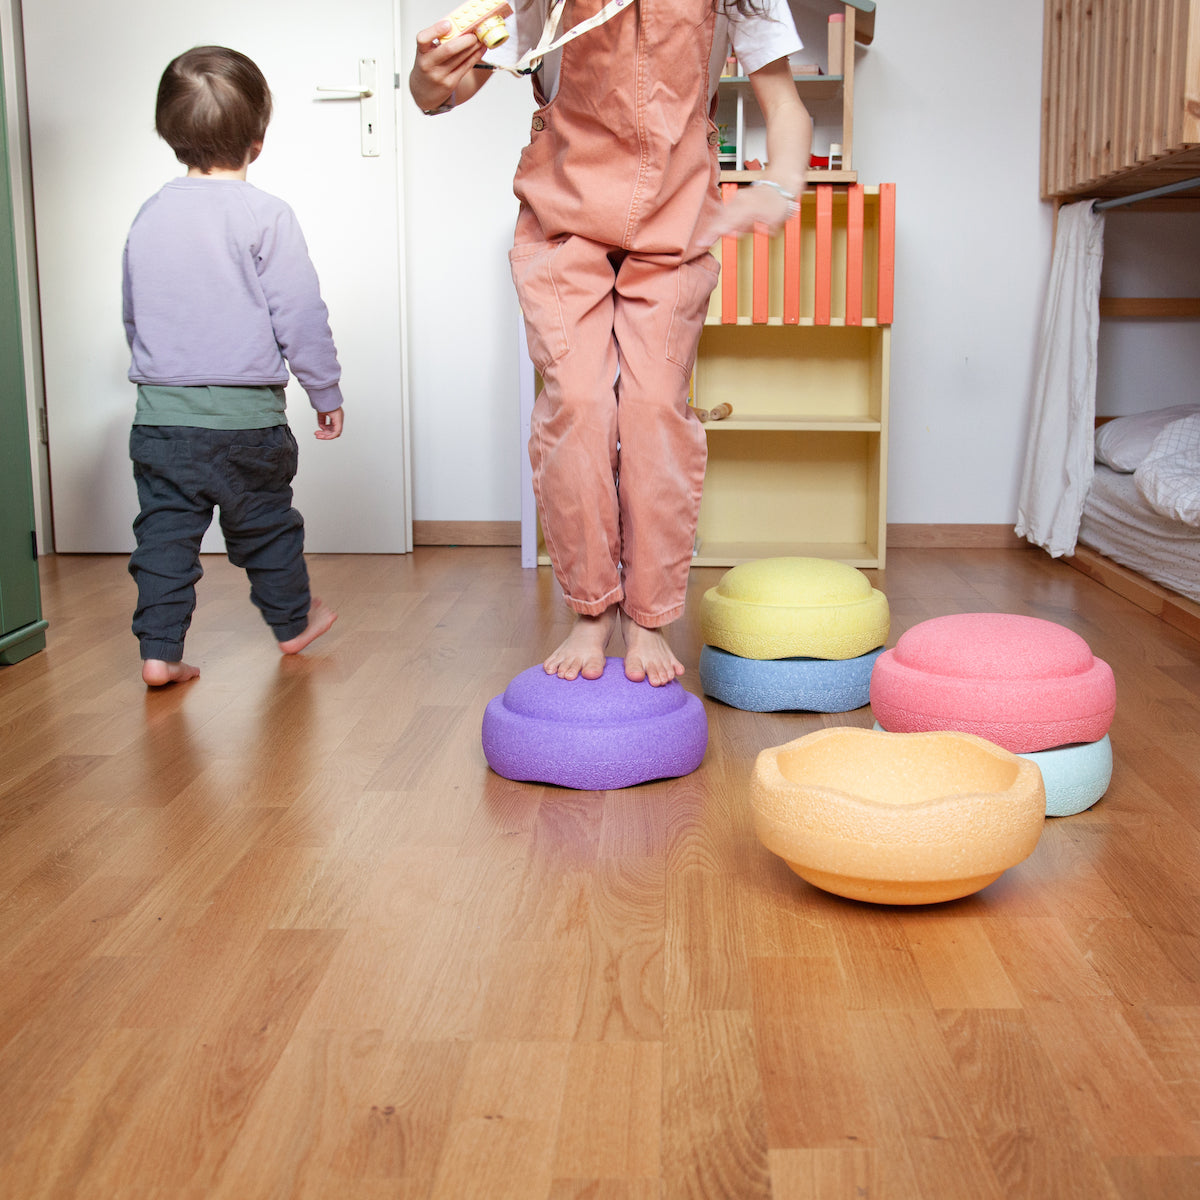 De Stapelstein Original rainbow set pastel 6 stuks is het perfecte open einde speelgoed voor urenlang speelplezier. De set stimuleert de creativiteit; kinderen kunnen zelf invulling aan het speelgoed geven. VanZus.